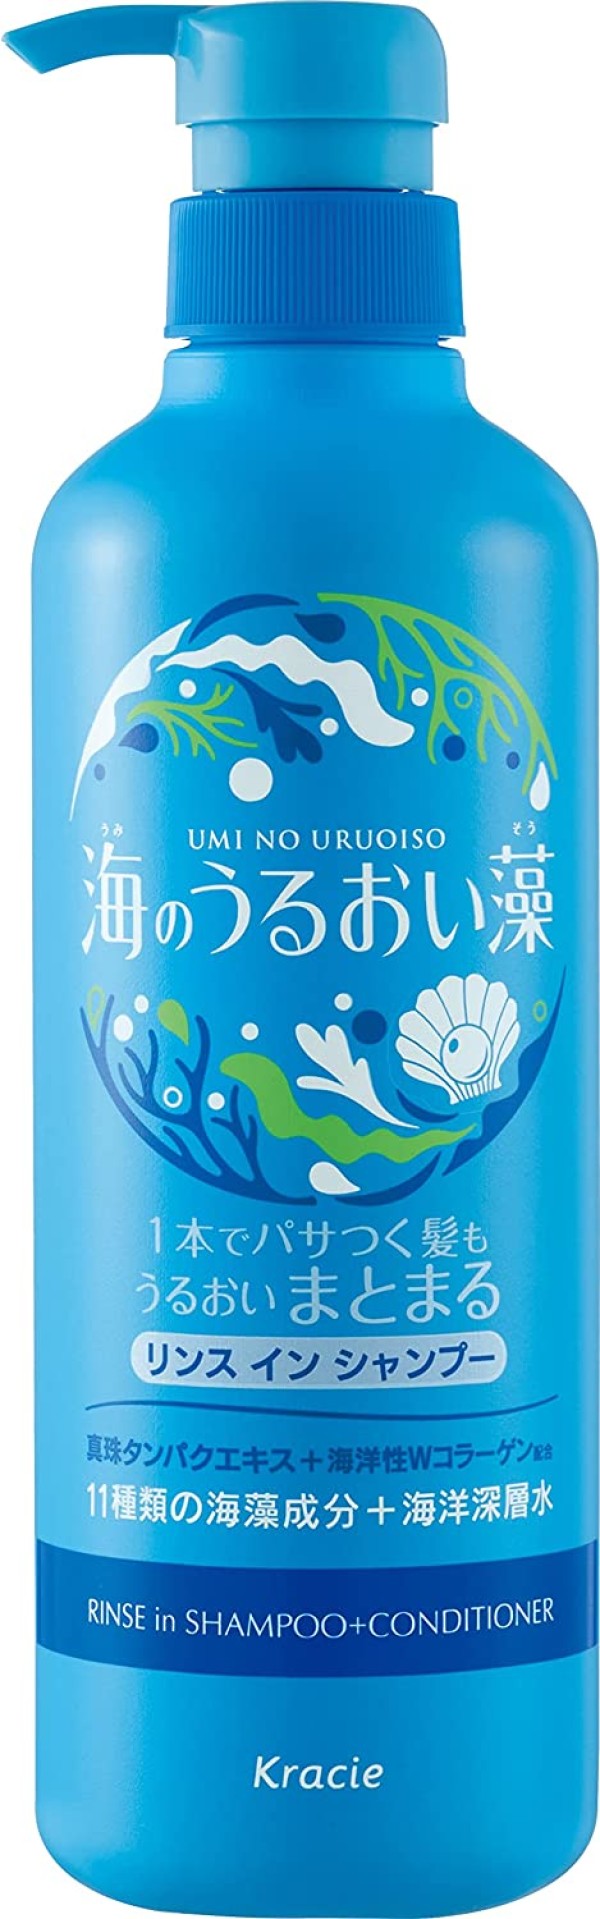 Umi No Uruoi Sou Шампунь ополаскиватель для волос 2 в 1 с экстрактами морских водорослей, 490 мл